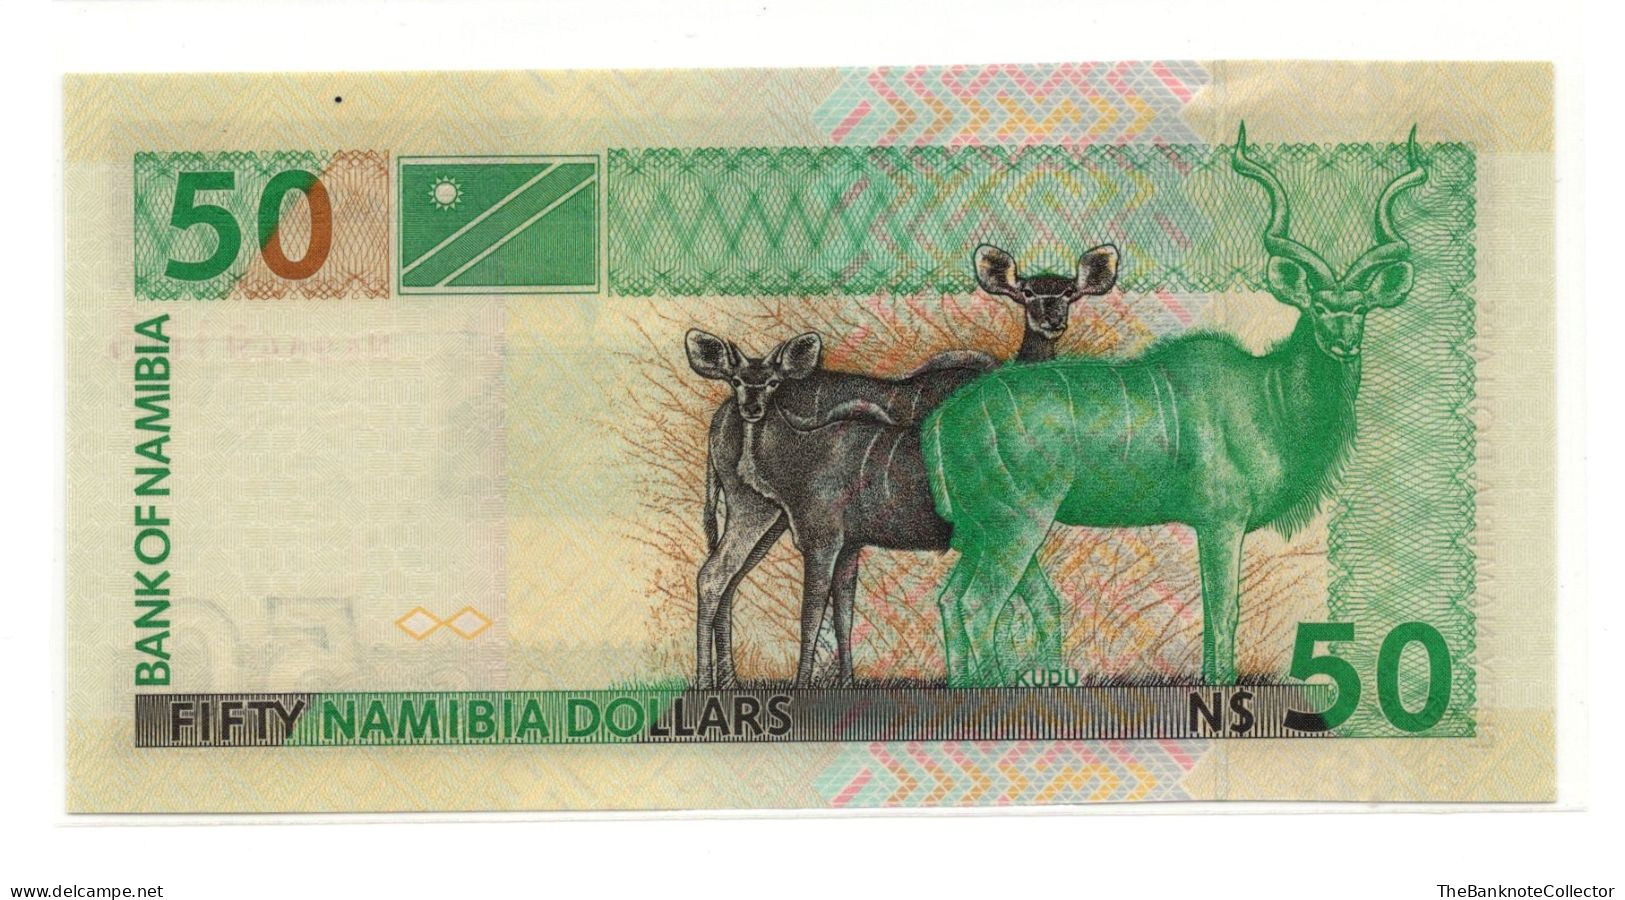 Namibia 50 Dollars ND 1996-2003 P-6 UNC - Namibie